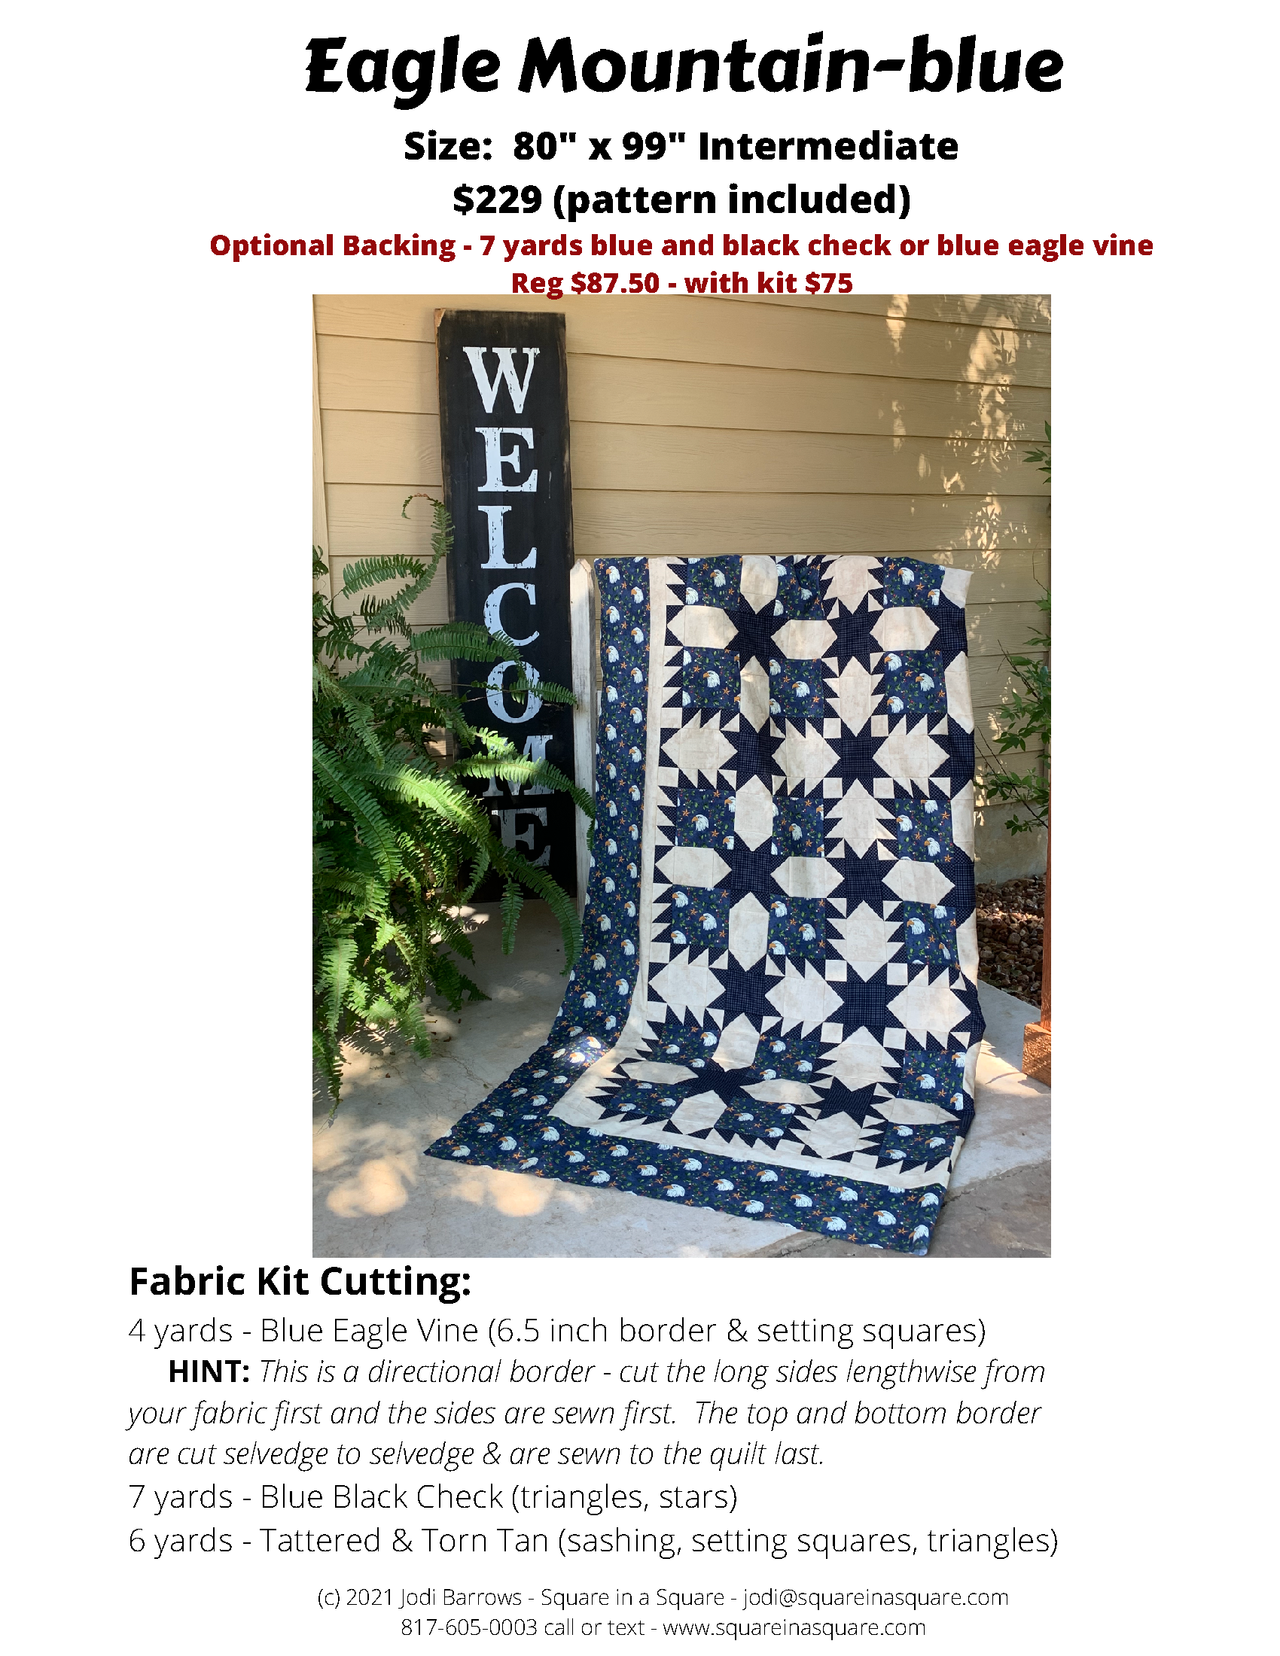 Eagle Mountain Blue fabric kit - Choose